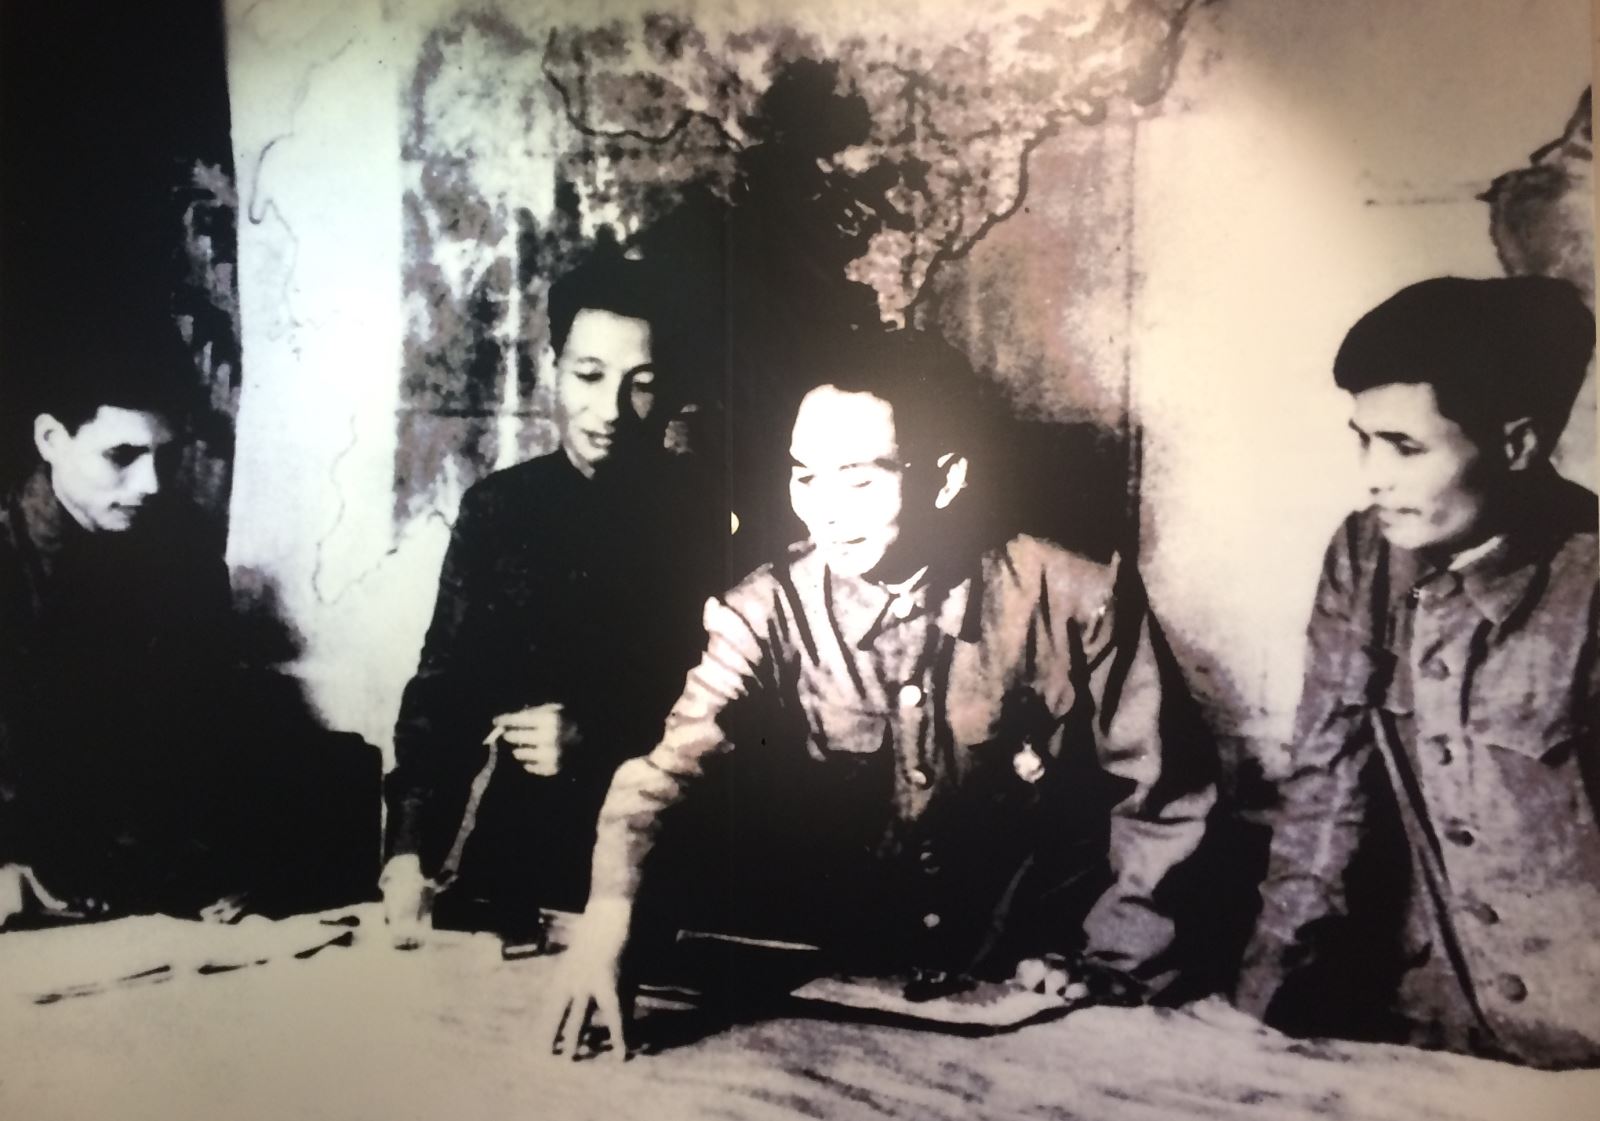 Họp bàn kế hoạch tiêu diệt tập đoàn cứ điểm Điện Biên Phủ đầu tháng 1/1954 (từ trái sang gồm các đồng chí: Thiếu tướng Văn Tiến Dũng, Trần Đăng Ninh, Đại tướng Võ Nguyên Giáp, Nguyễn Chí Thanh)